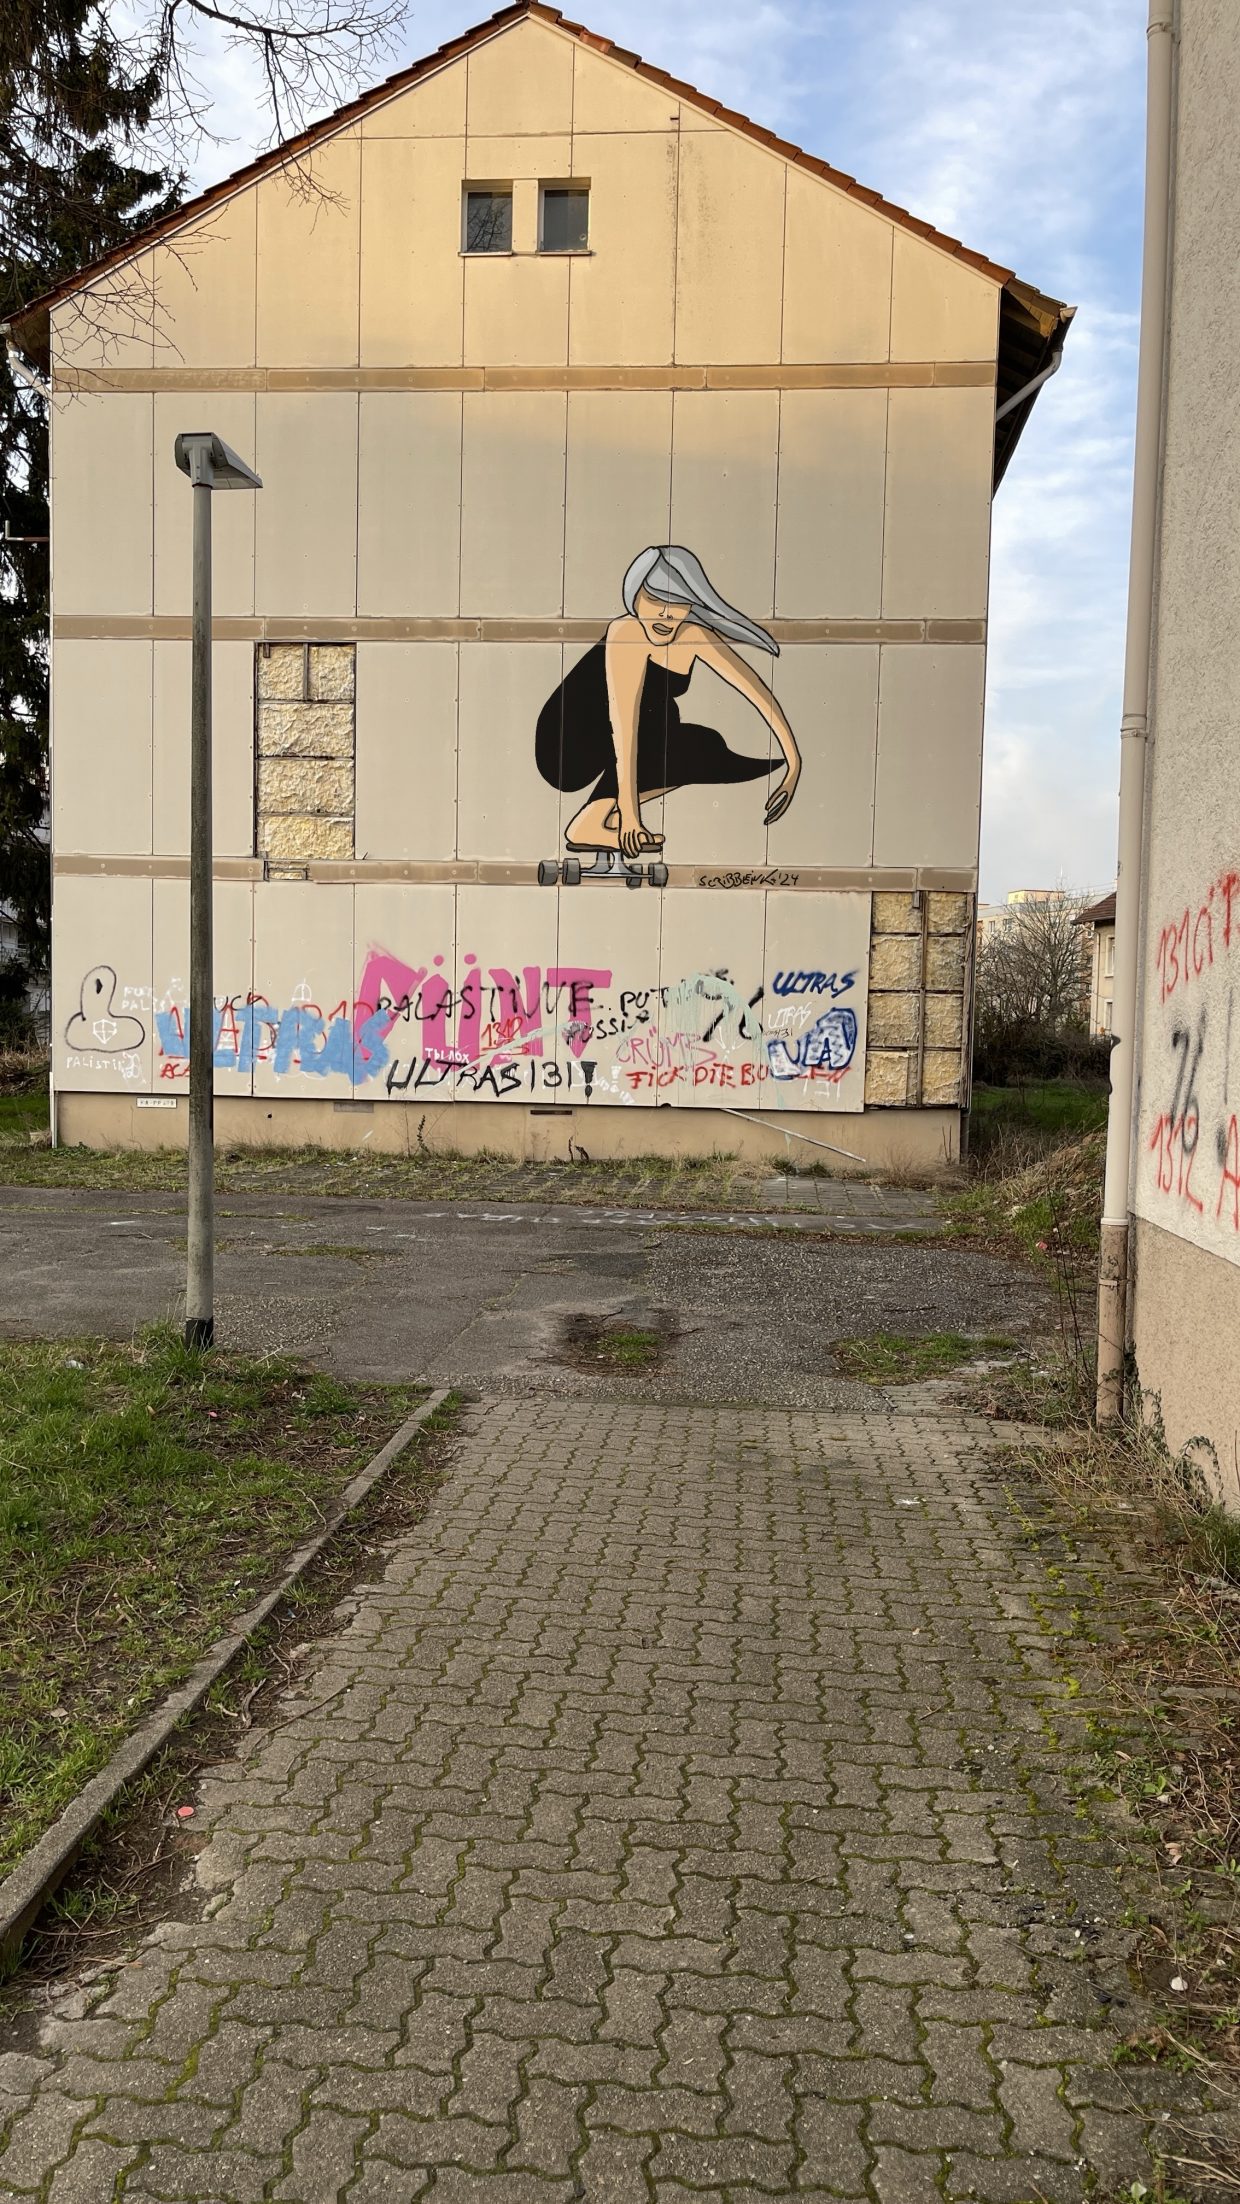 Abbruchreifes Haus in der Karlsruhe Oststadt. Verschieden besprüht. Unter anderem mit dem Bild einer grauhaarigen Frau auf einem Skateboard.